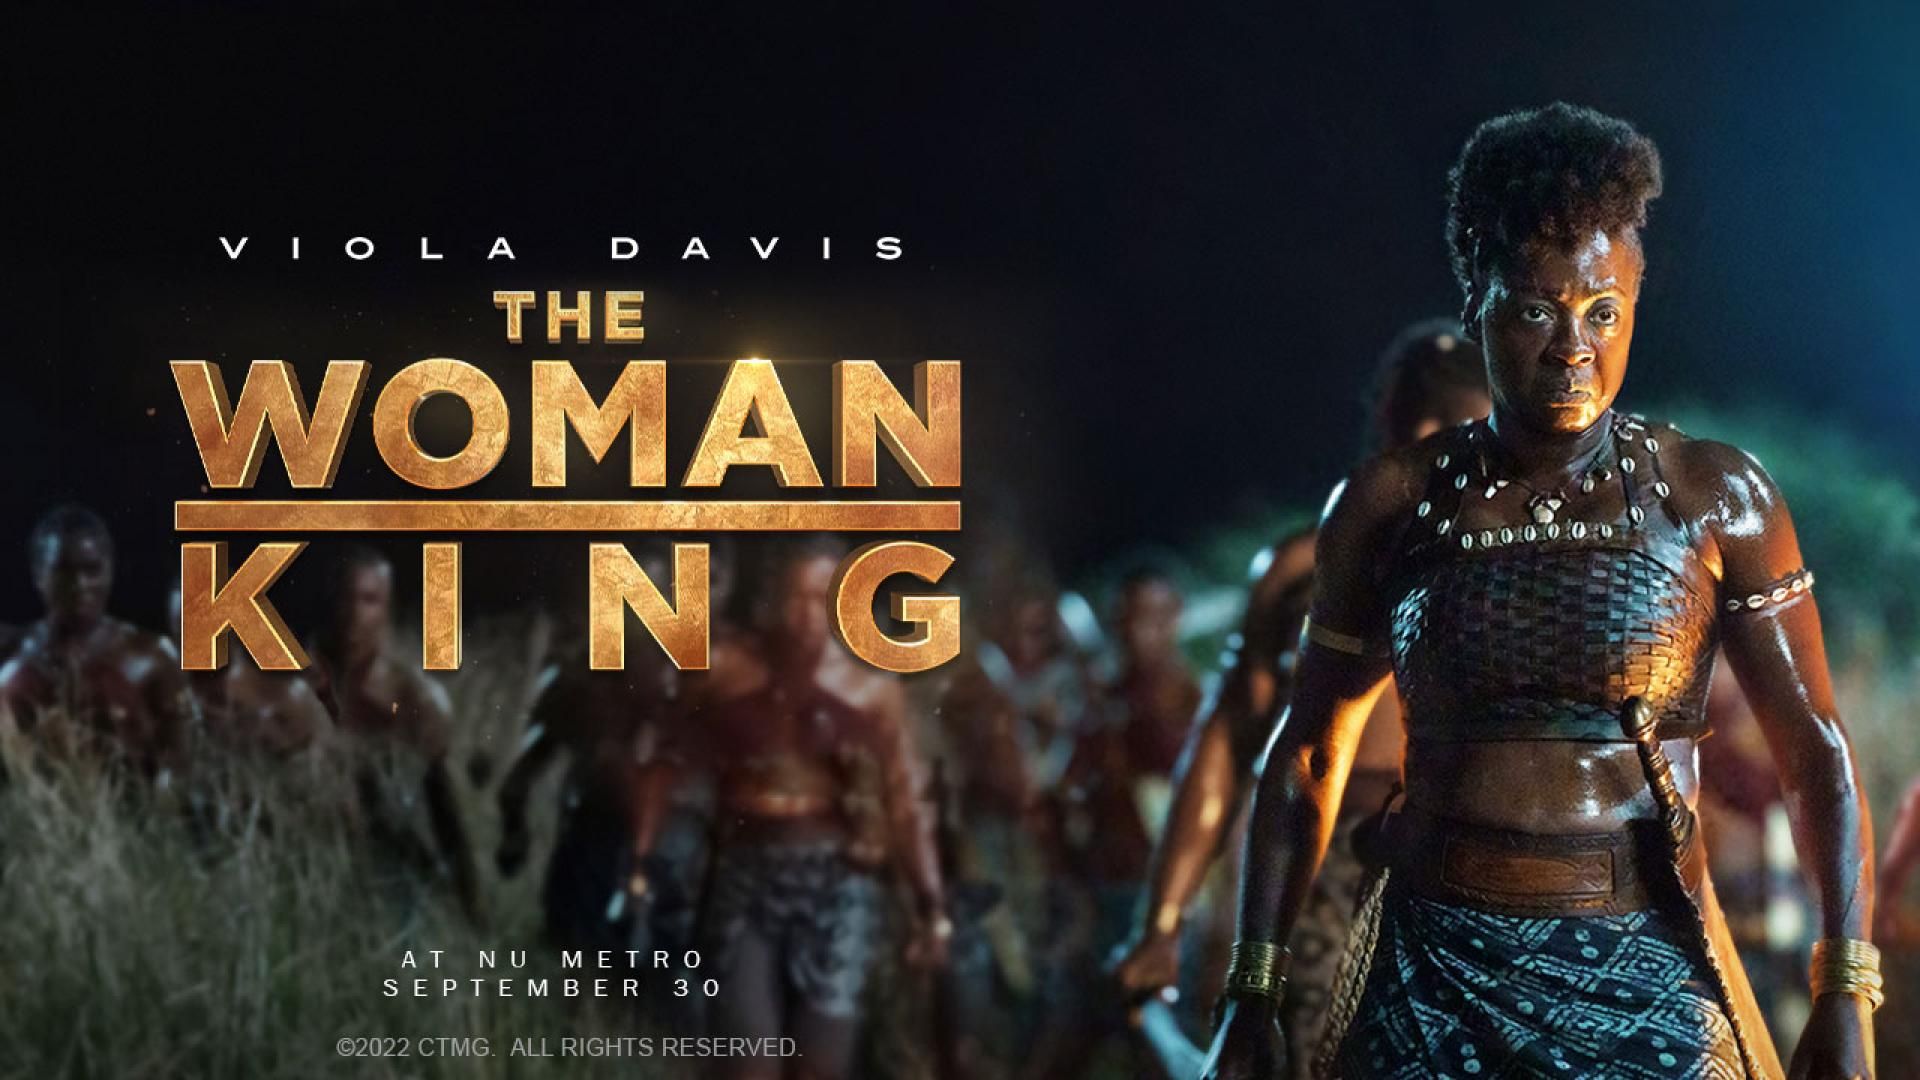 True Story Behind The Woman King Movie - Douglas Wilkins News